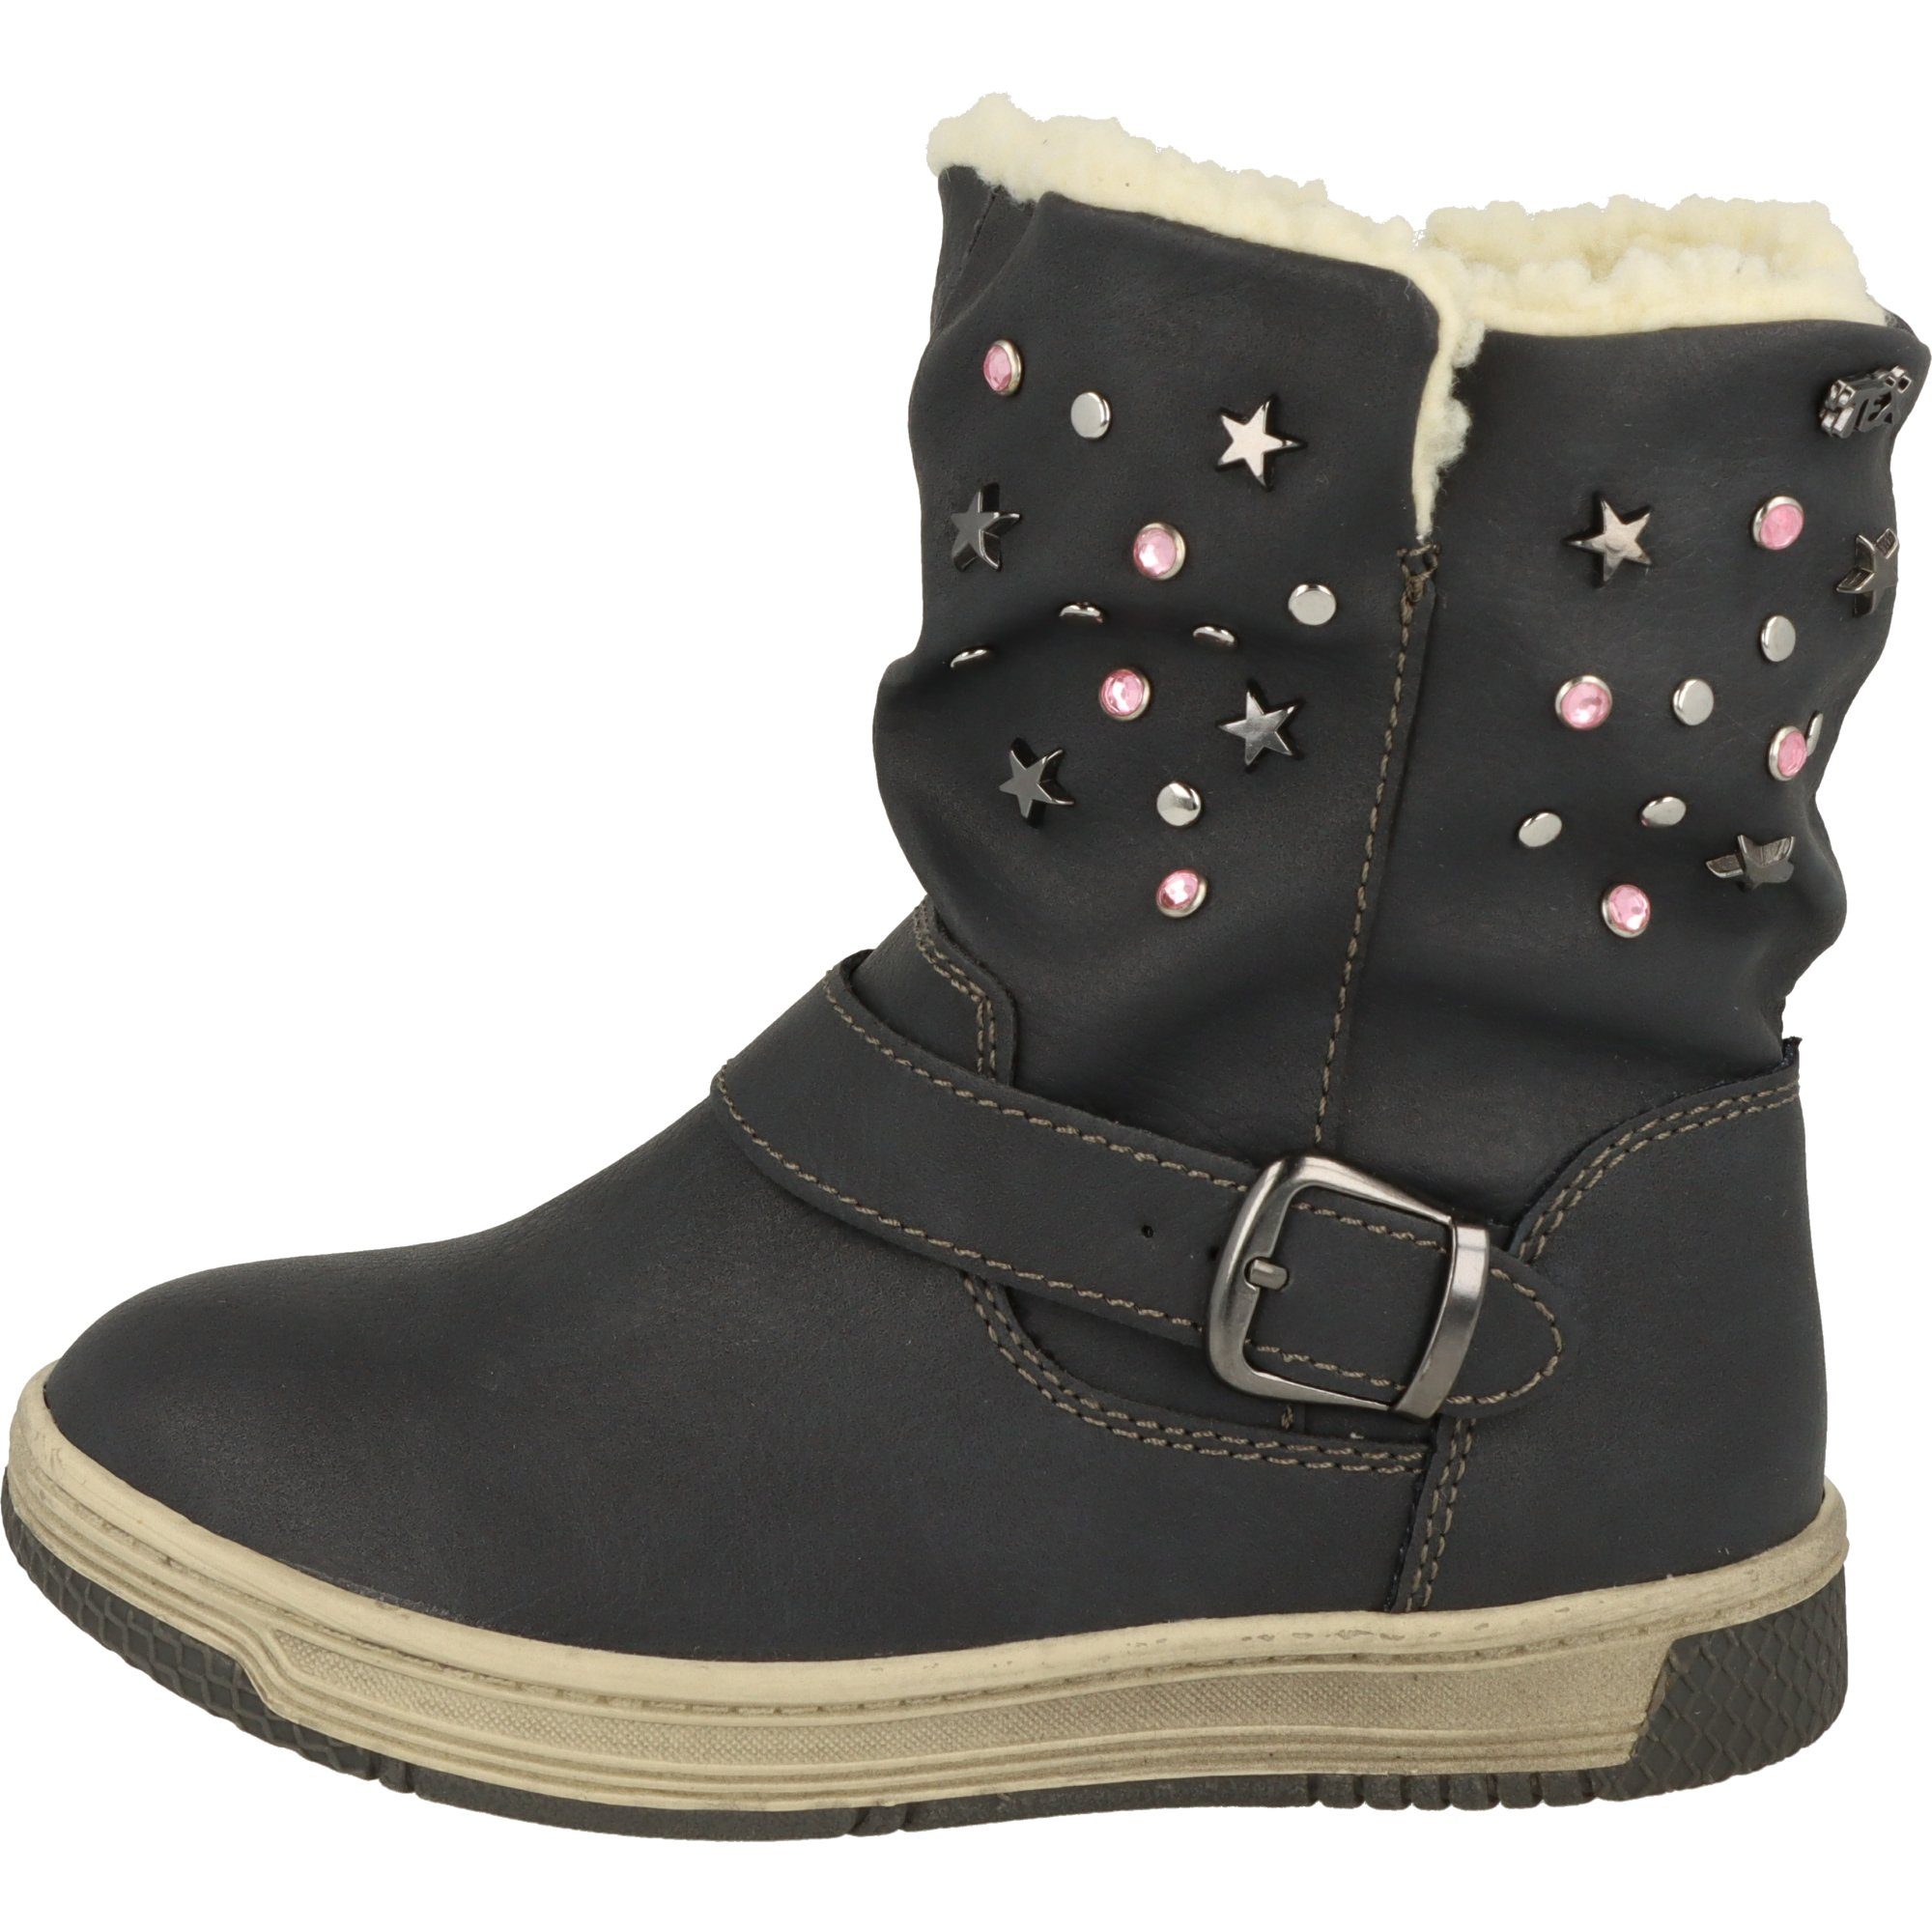 Wasserabweisend Navy Sterne gefütterte Schuhe Winterstiefel 354-018 Indigo Mädchen Boots Glitzer